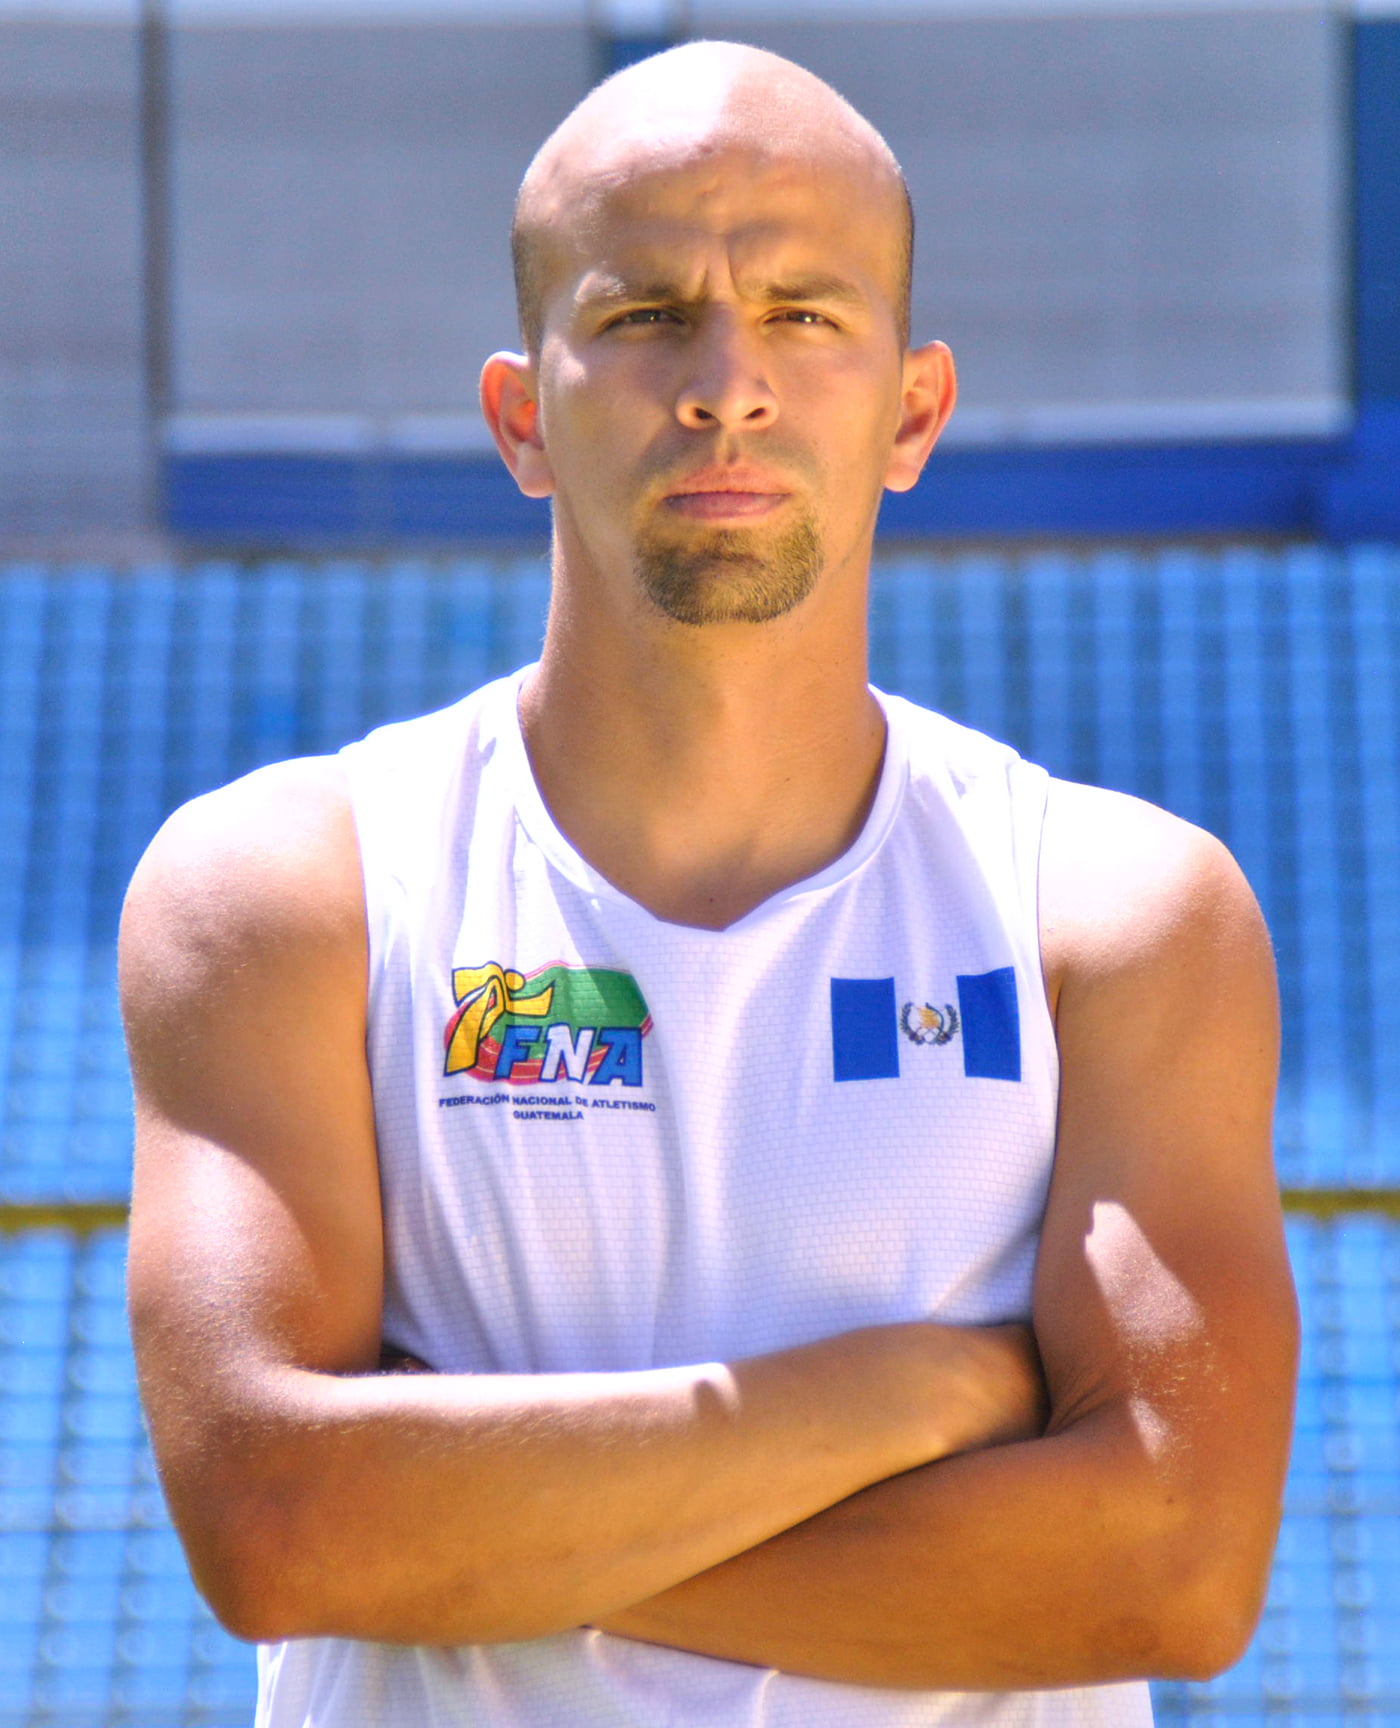 Allan Ayala